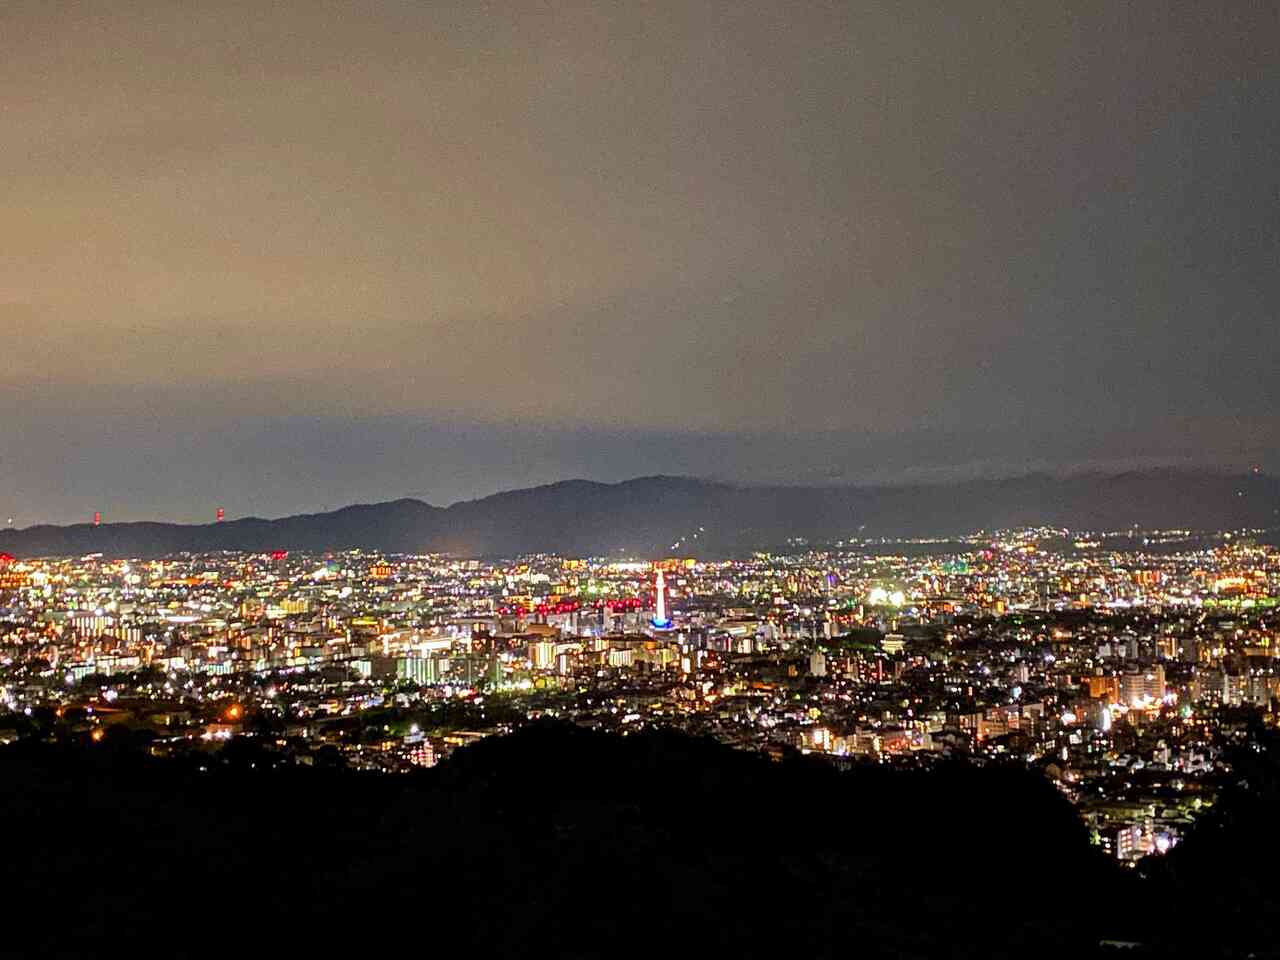 京都市営展望台 京都市内の夜景がパノラマで見られる人気デートスポット 行ったところ